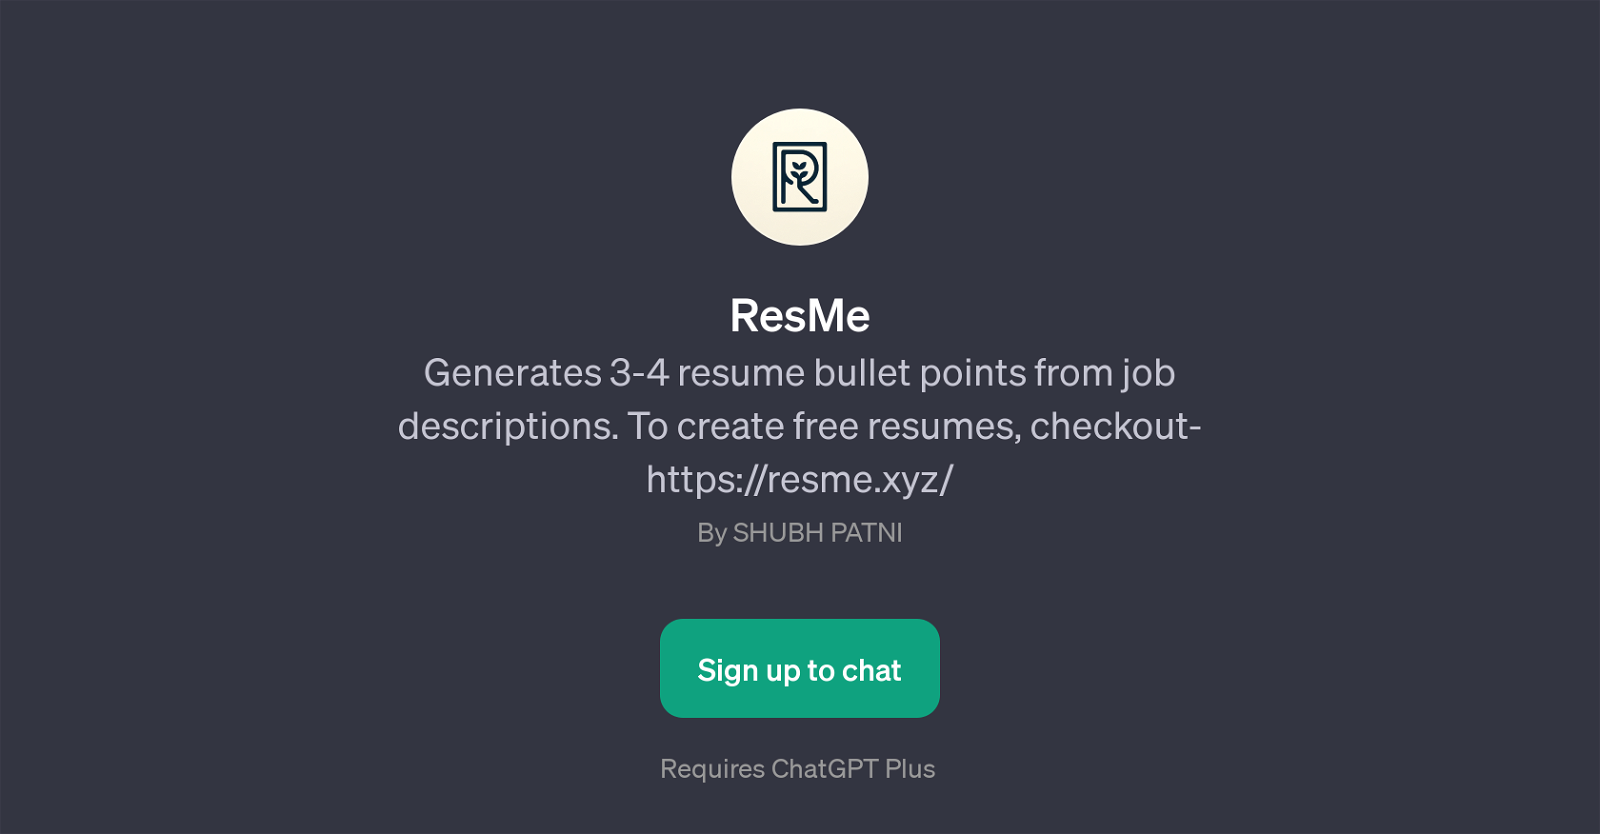 ResMe website